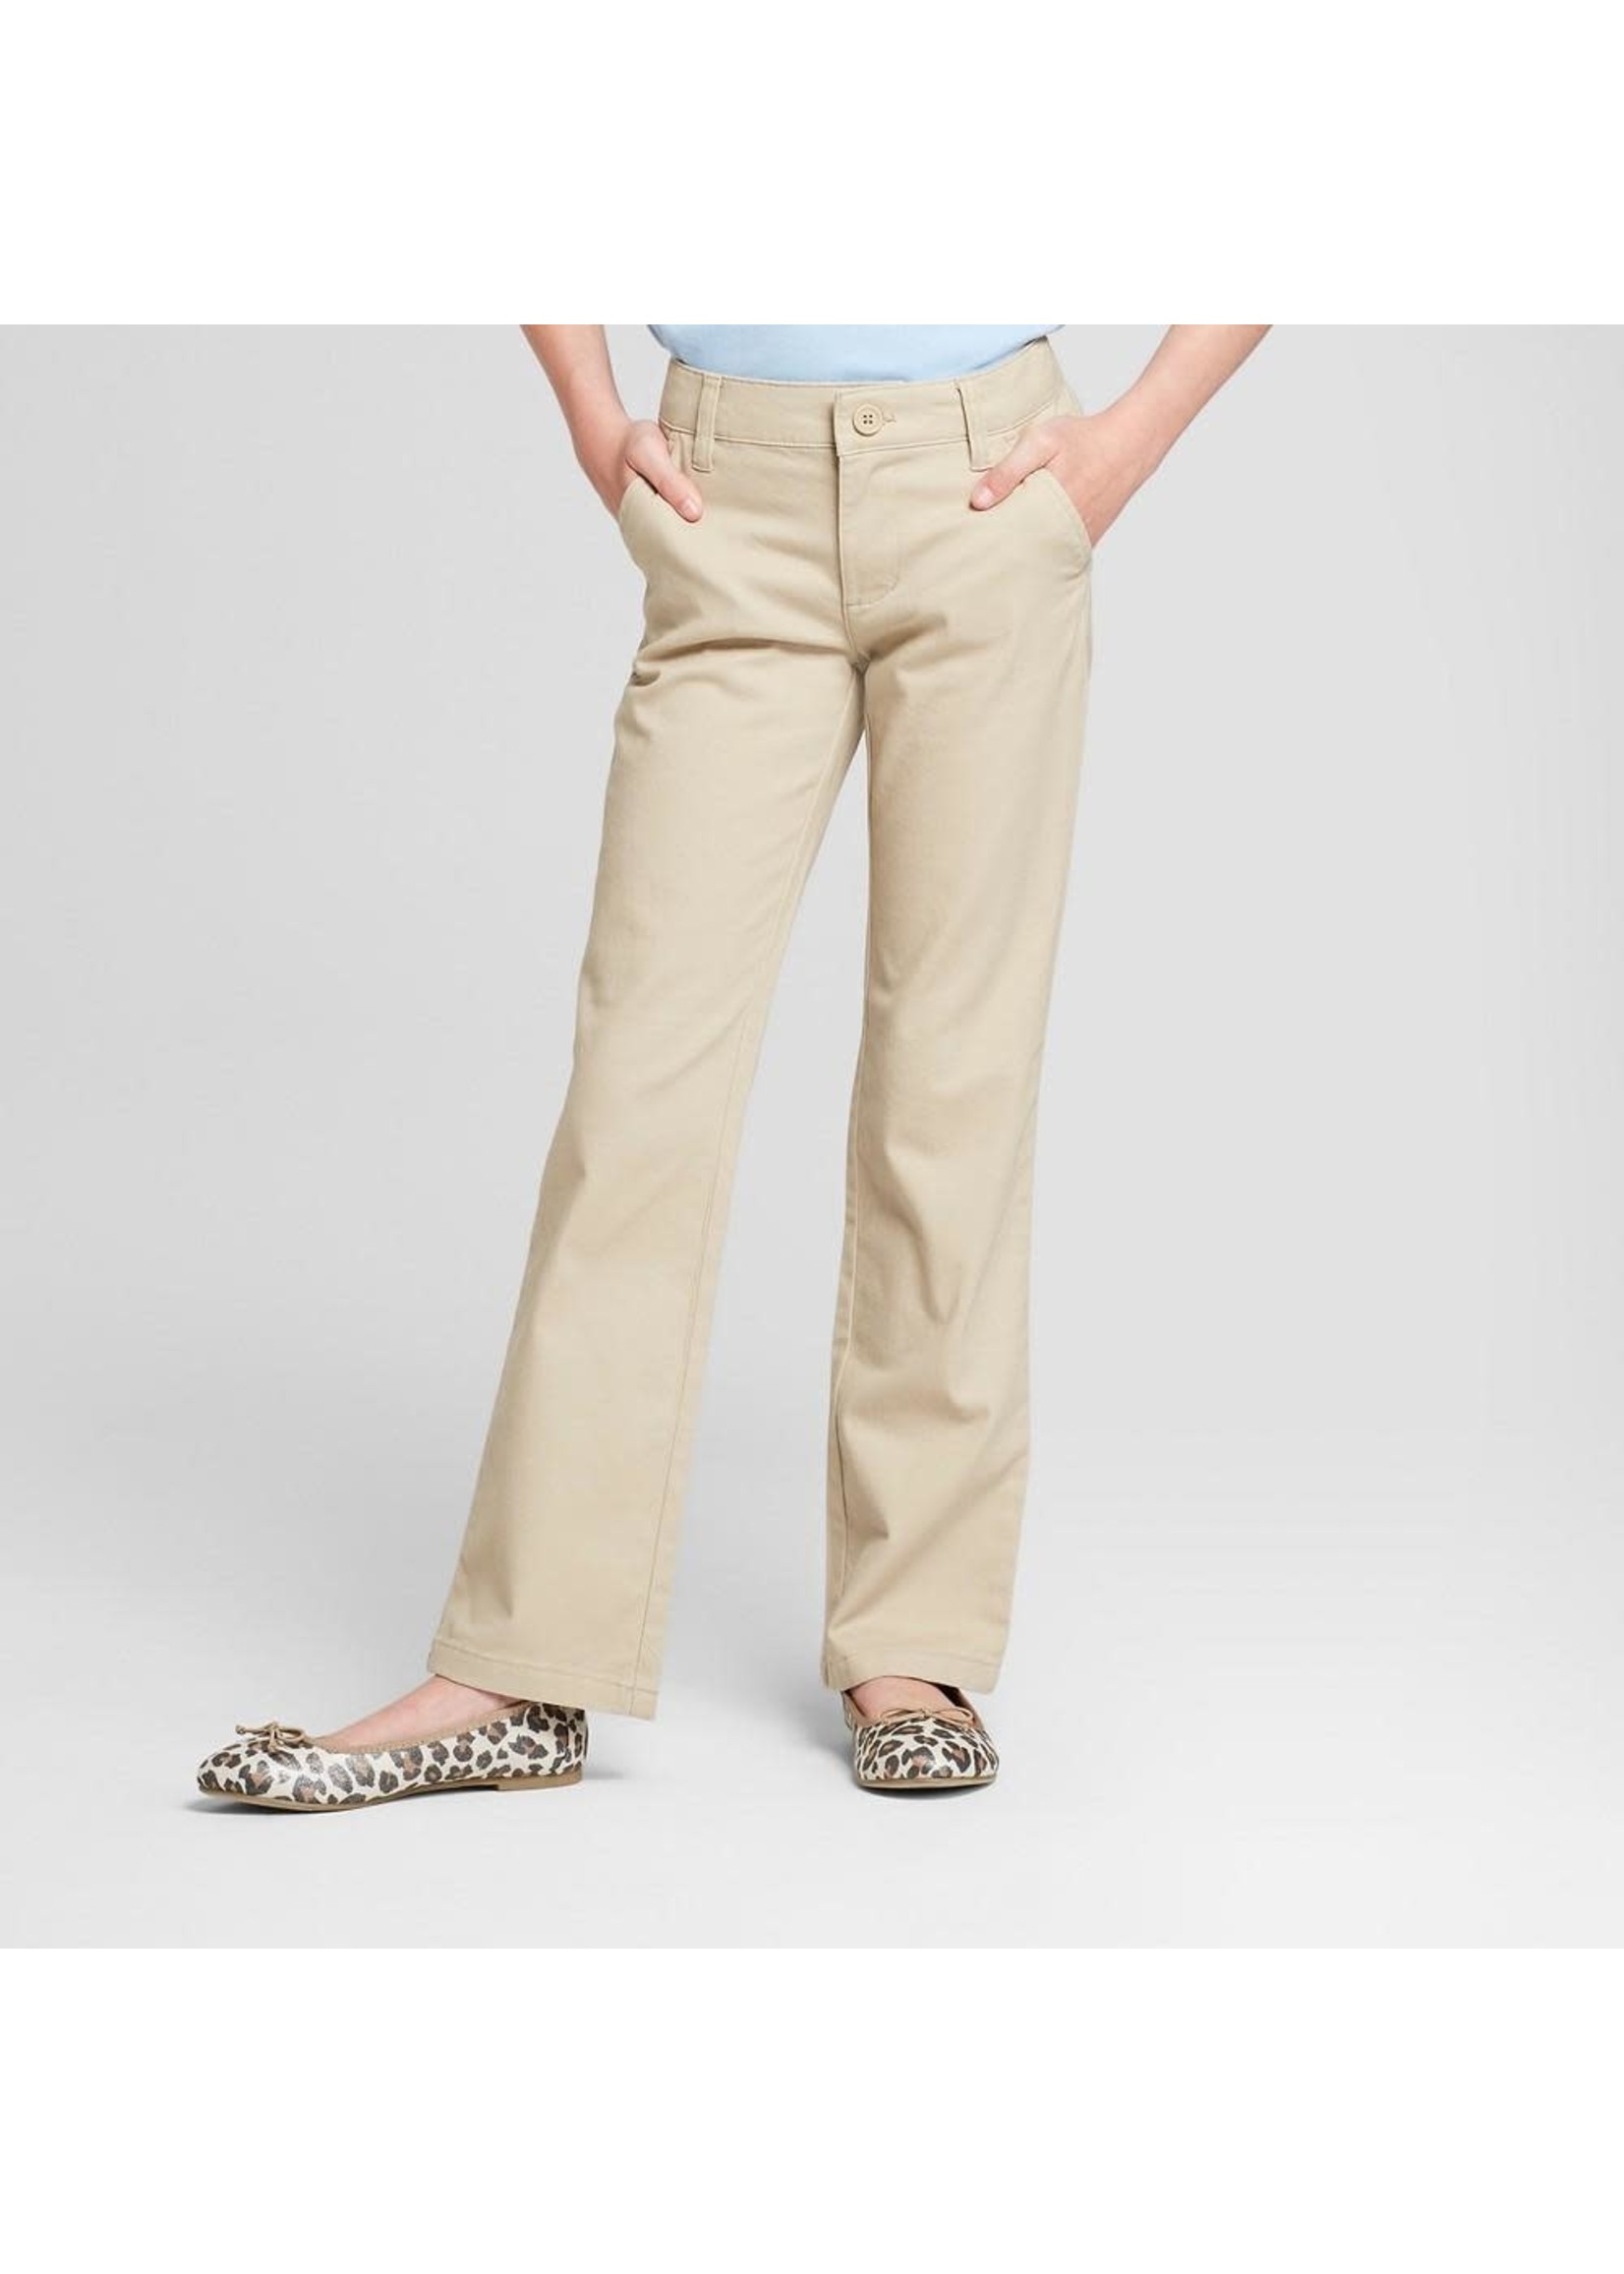 Girls' Bootcut Twill Uniform Chino Pants - Cat & Jack™ Khaki 4